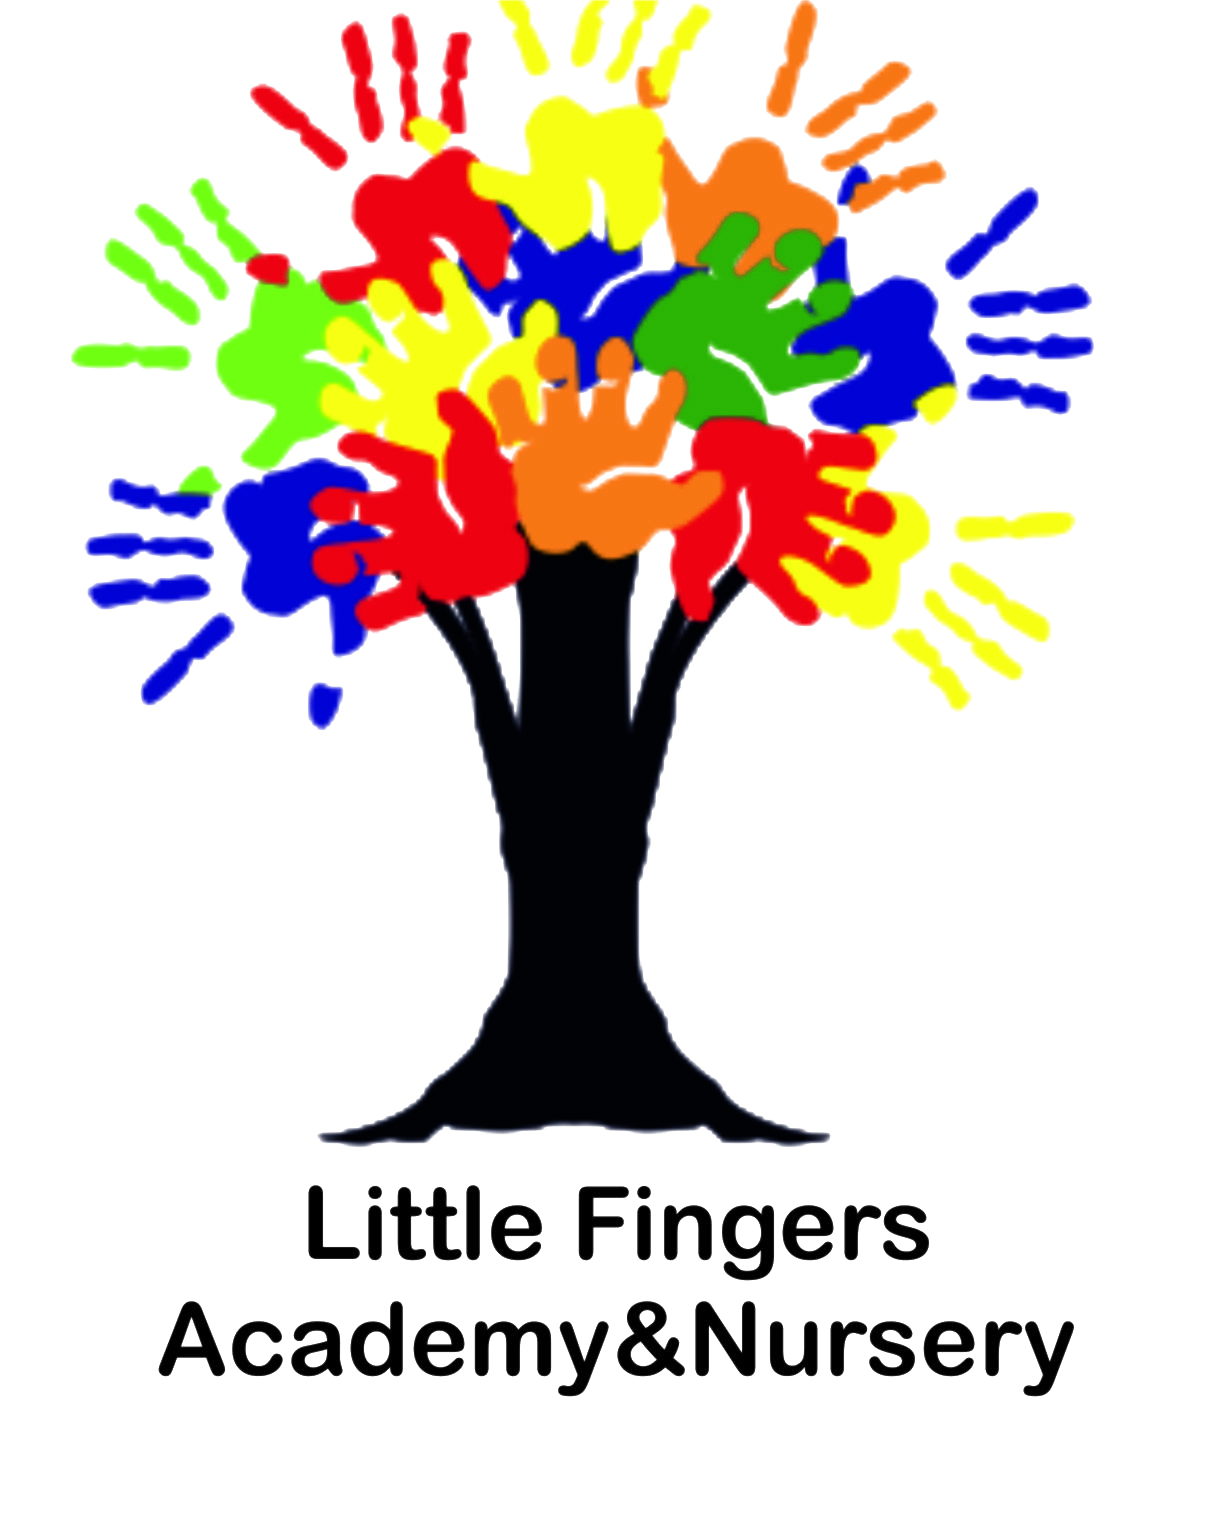 Little Fingers Academy & Nursery